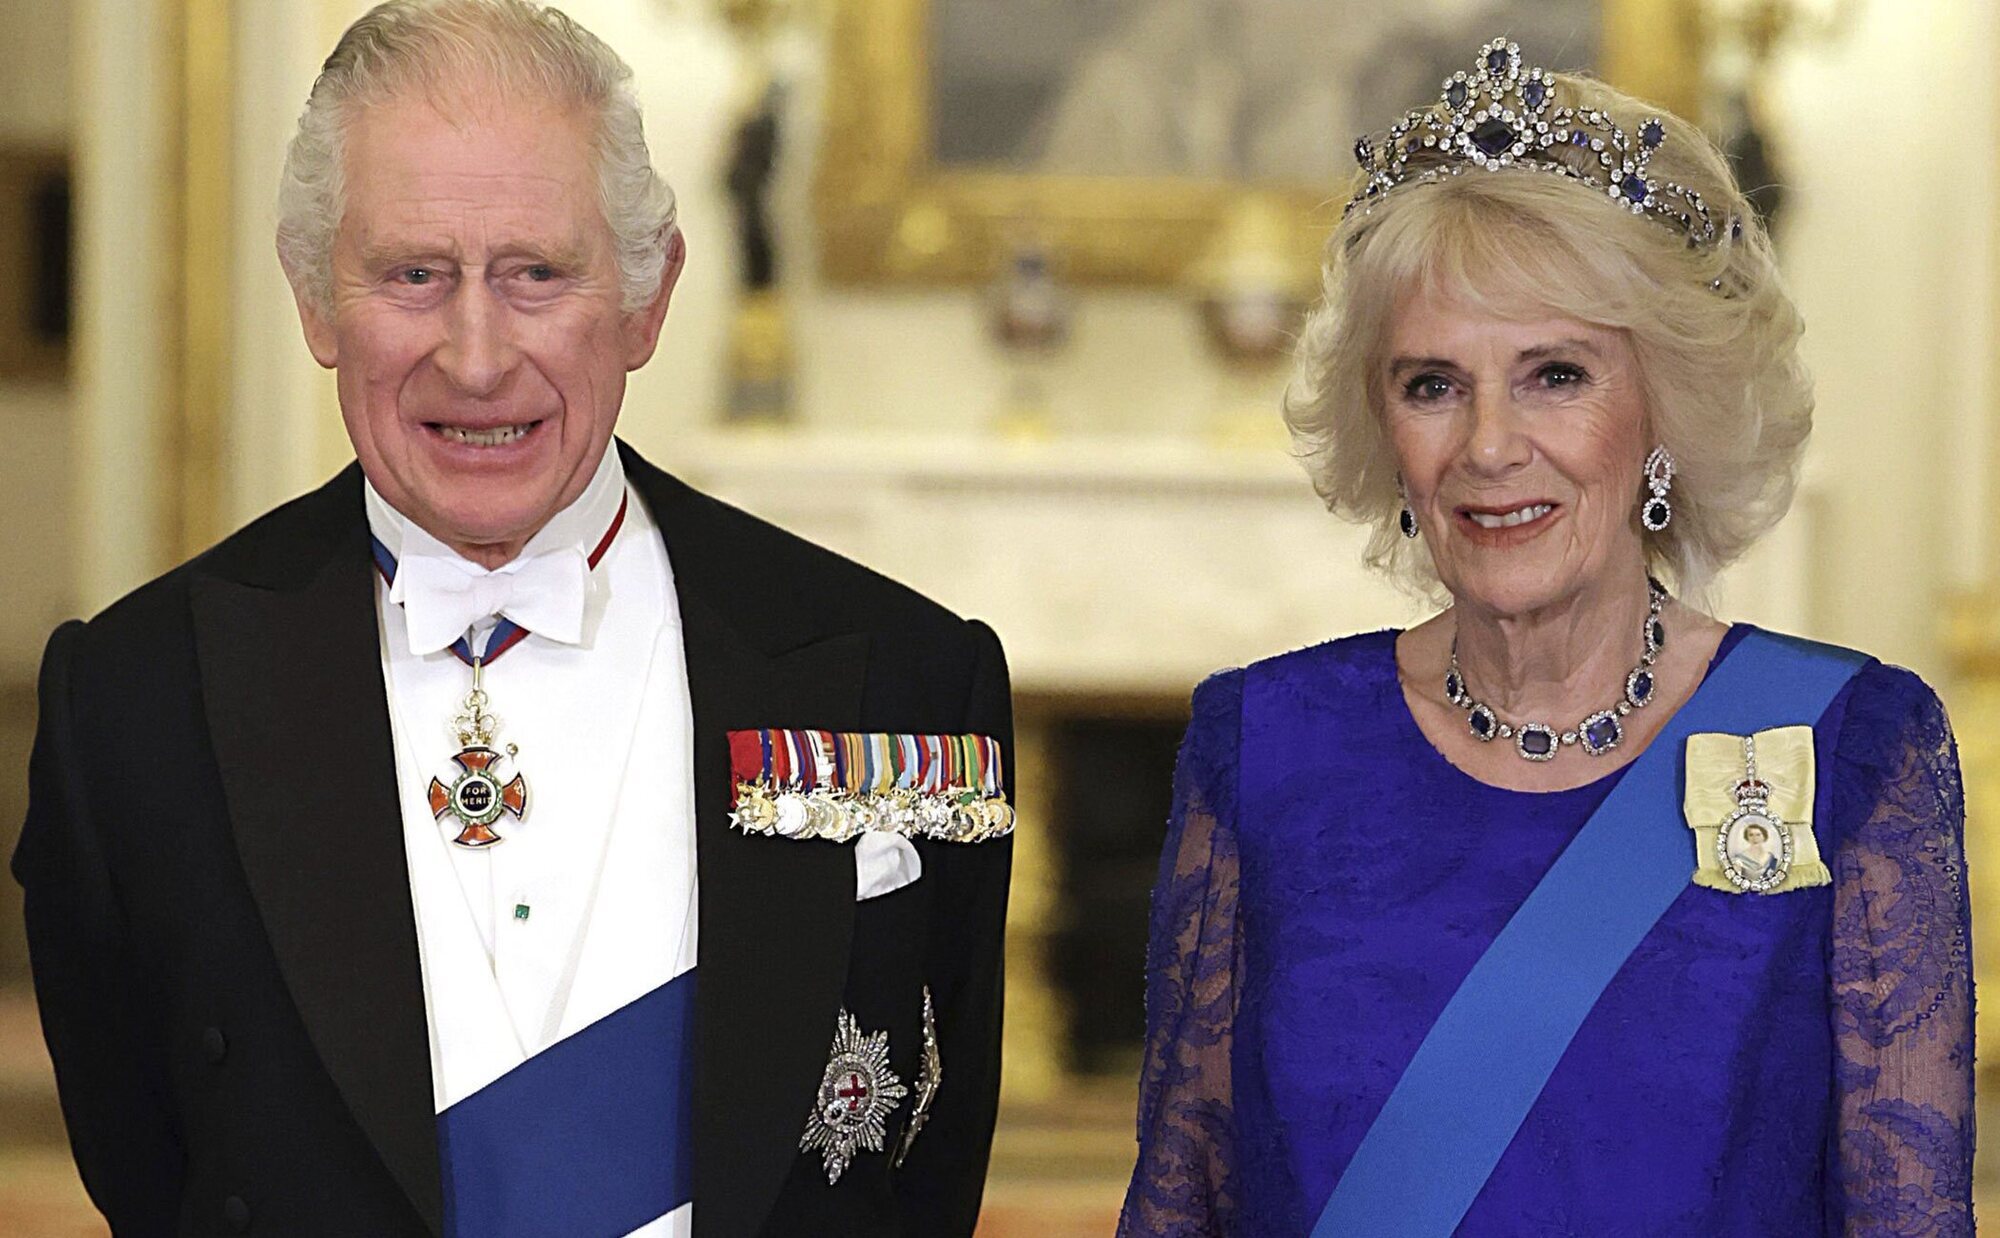 La tradición de la Familia Real Británica que los Reyes Carlos y Camilla van a seguir pese a que Carlos III no quería